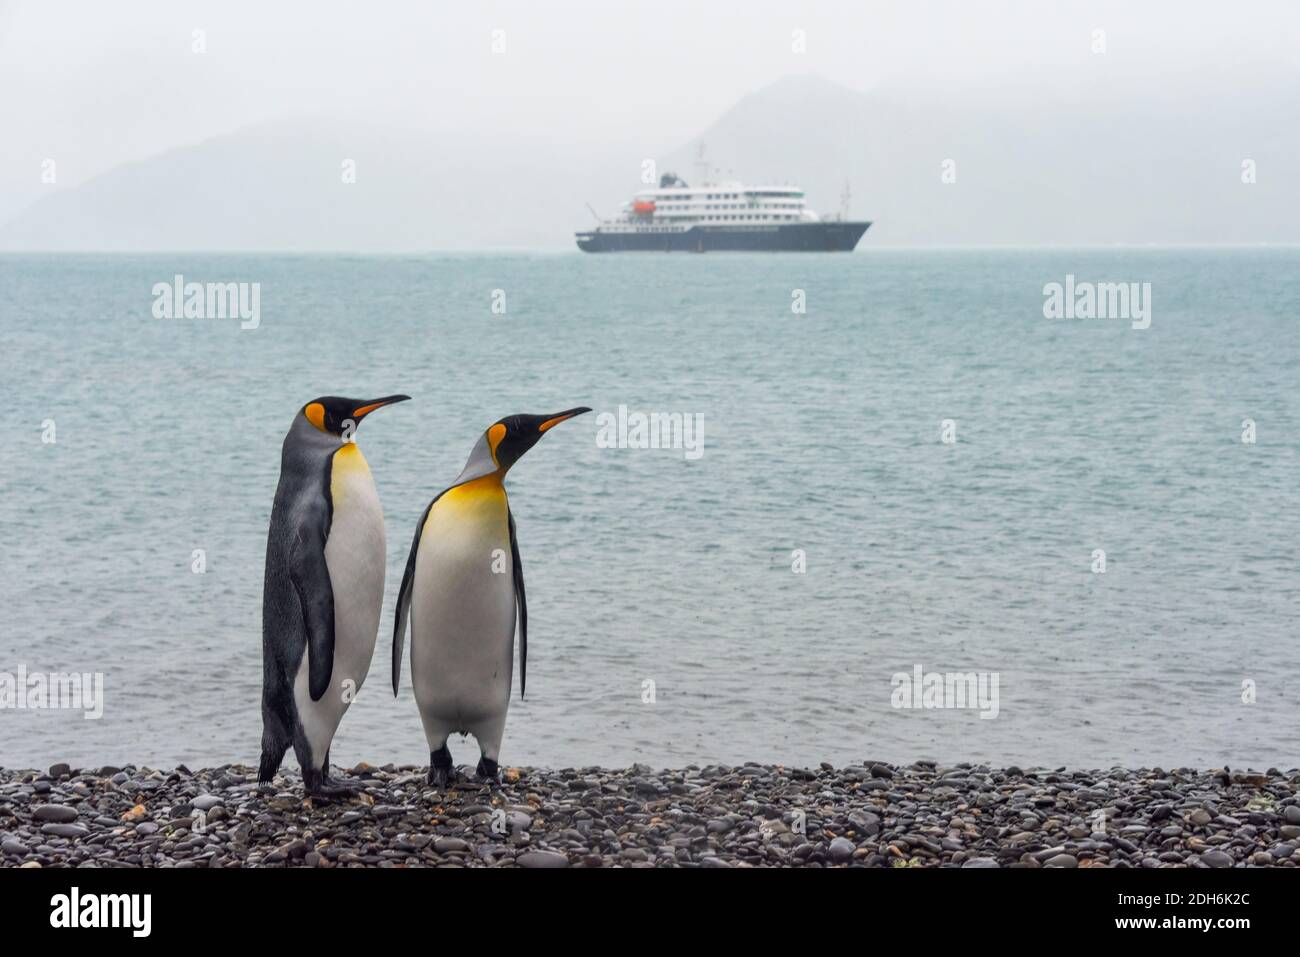 King Penguins sur la plage, bateau de croisière sur l'océan au loin, Prion Island, South Georgia Island Banque D'Images